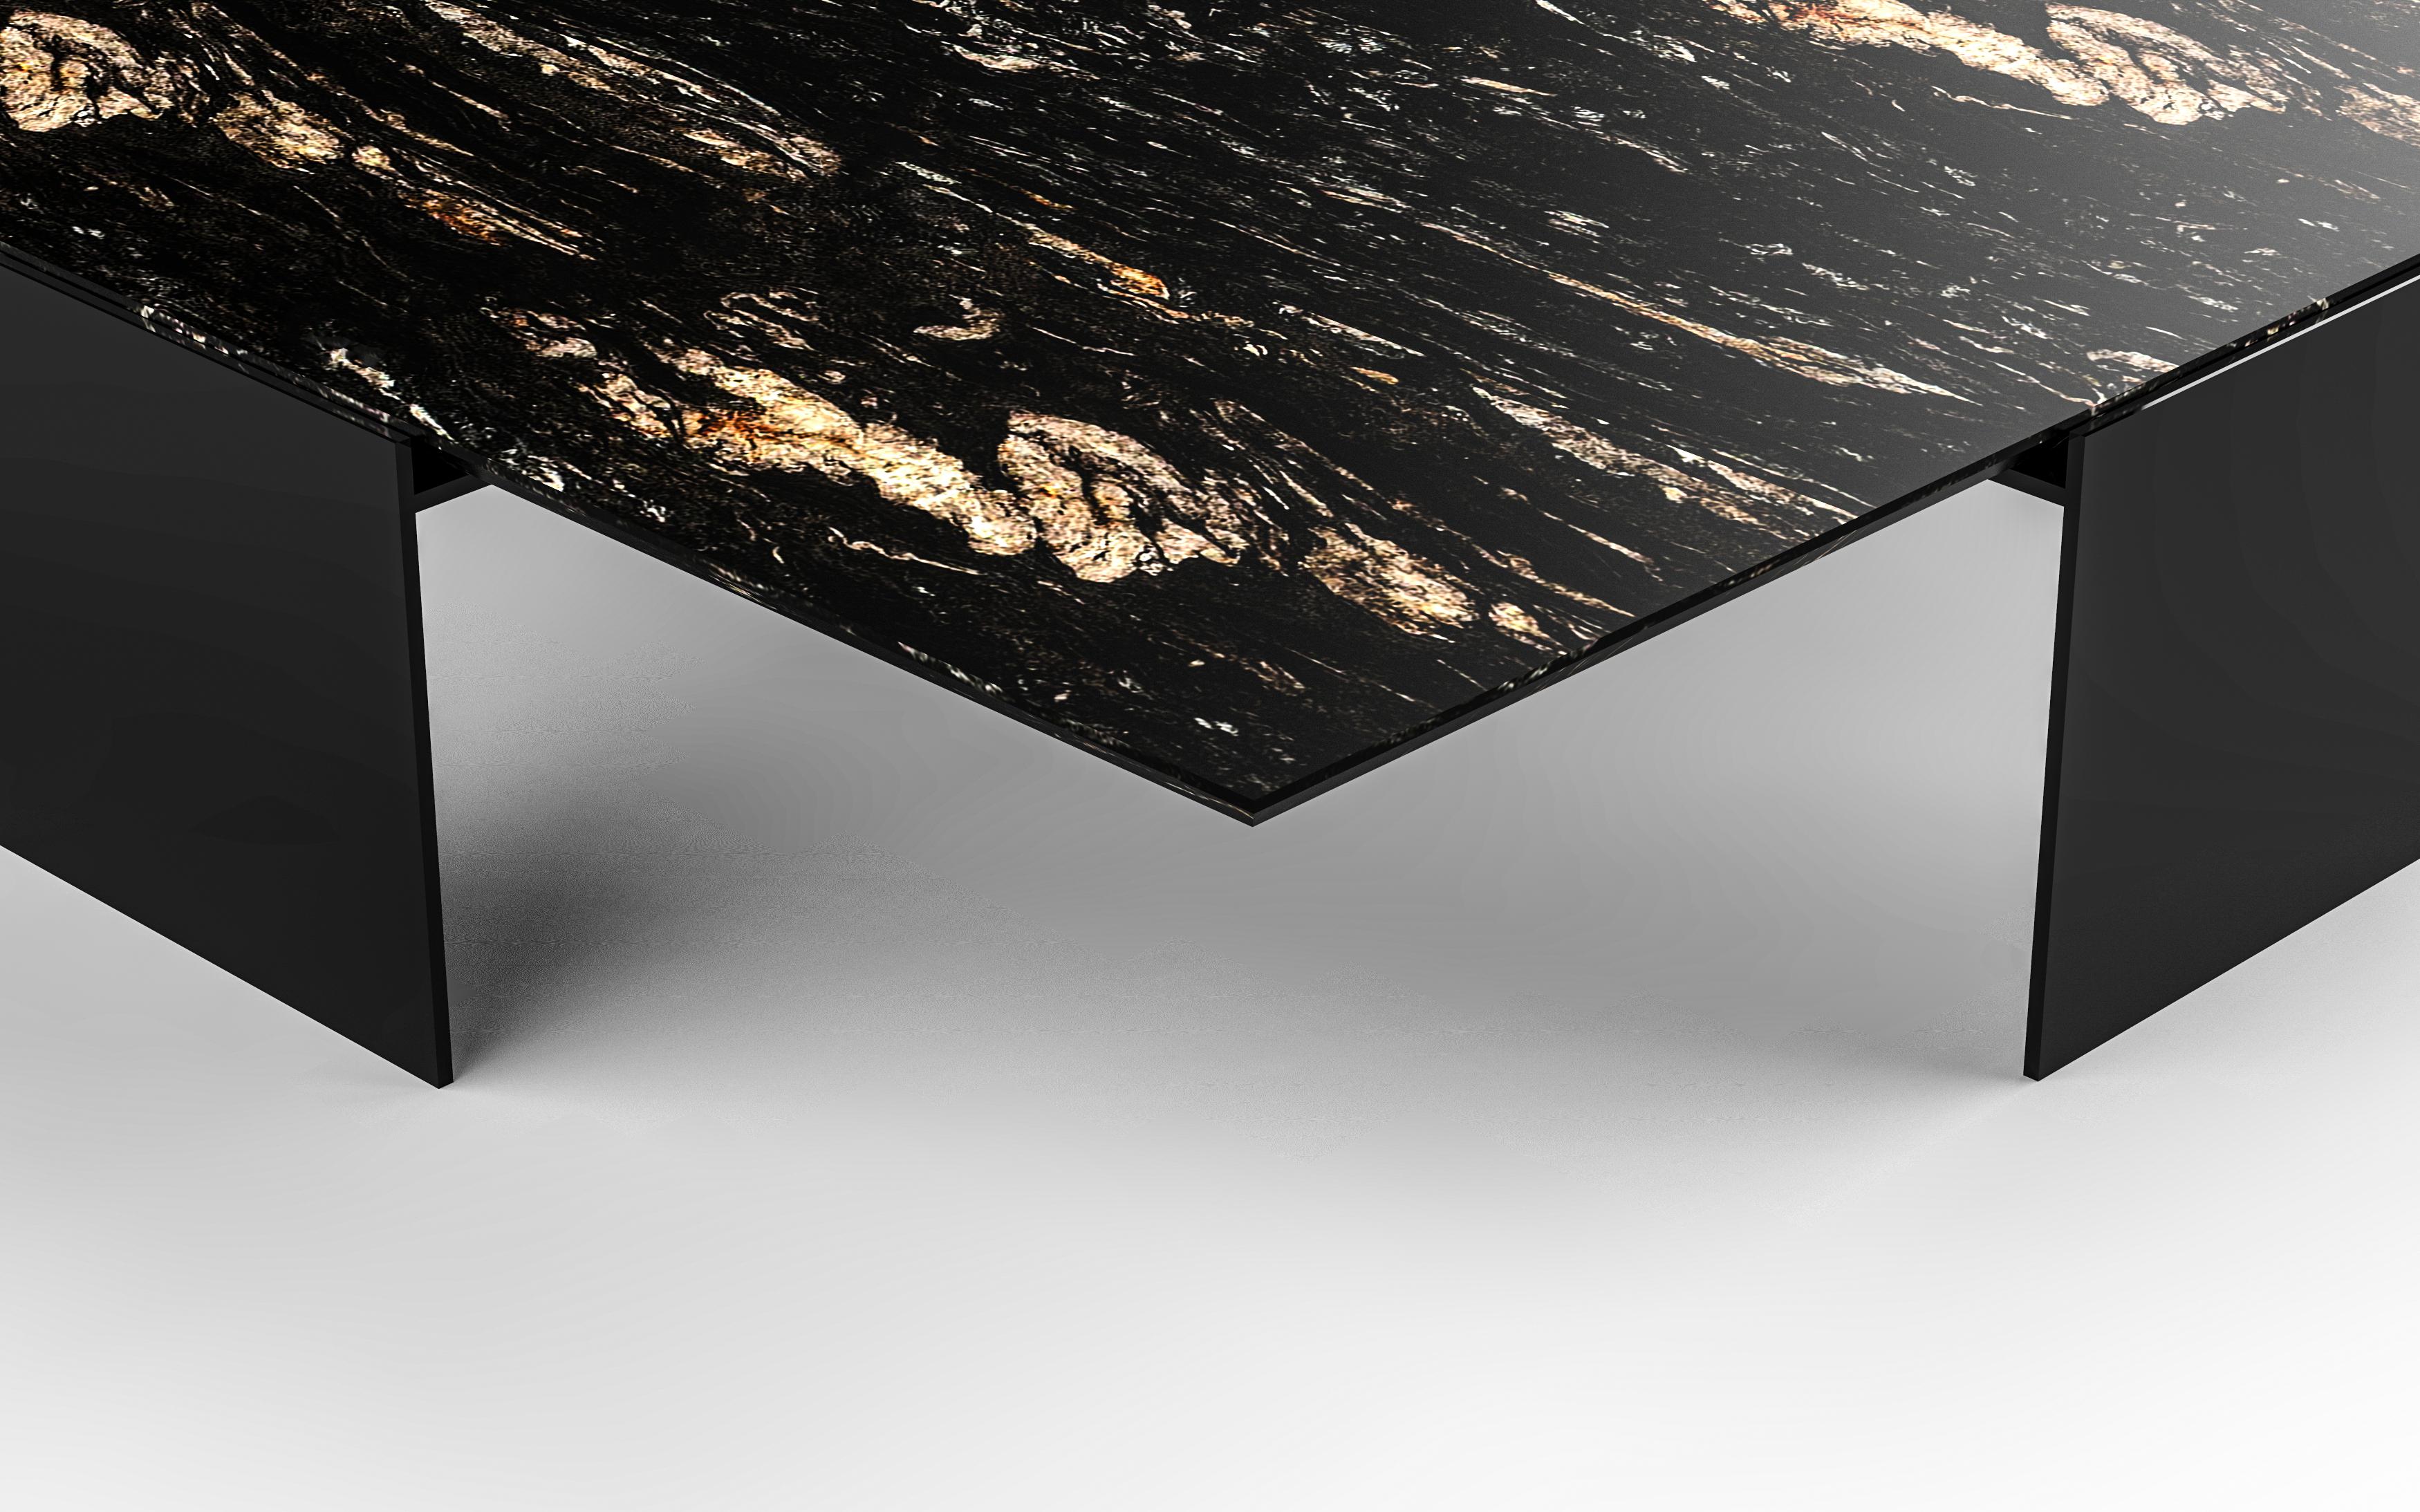 Des éléments en pierre et en métal fabriqués à la main soulignent la forme pure de la table à cocktail Fin de Chai Ming Studios.
Reposant sur un cadre architectural en acier, le plateau en pierre en porte-à-faux présente un bord biseauté de